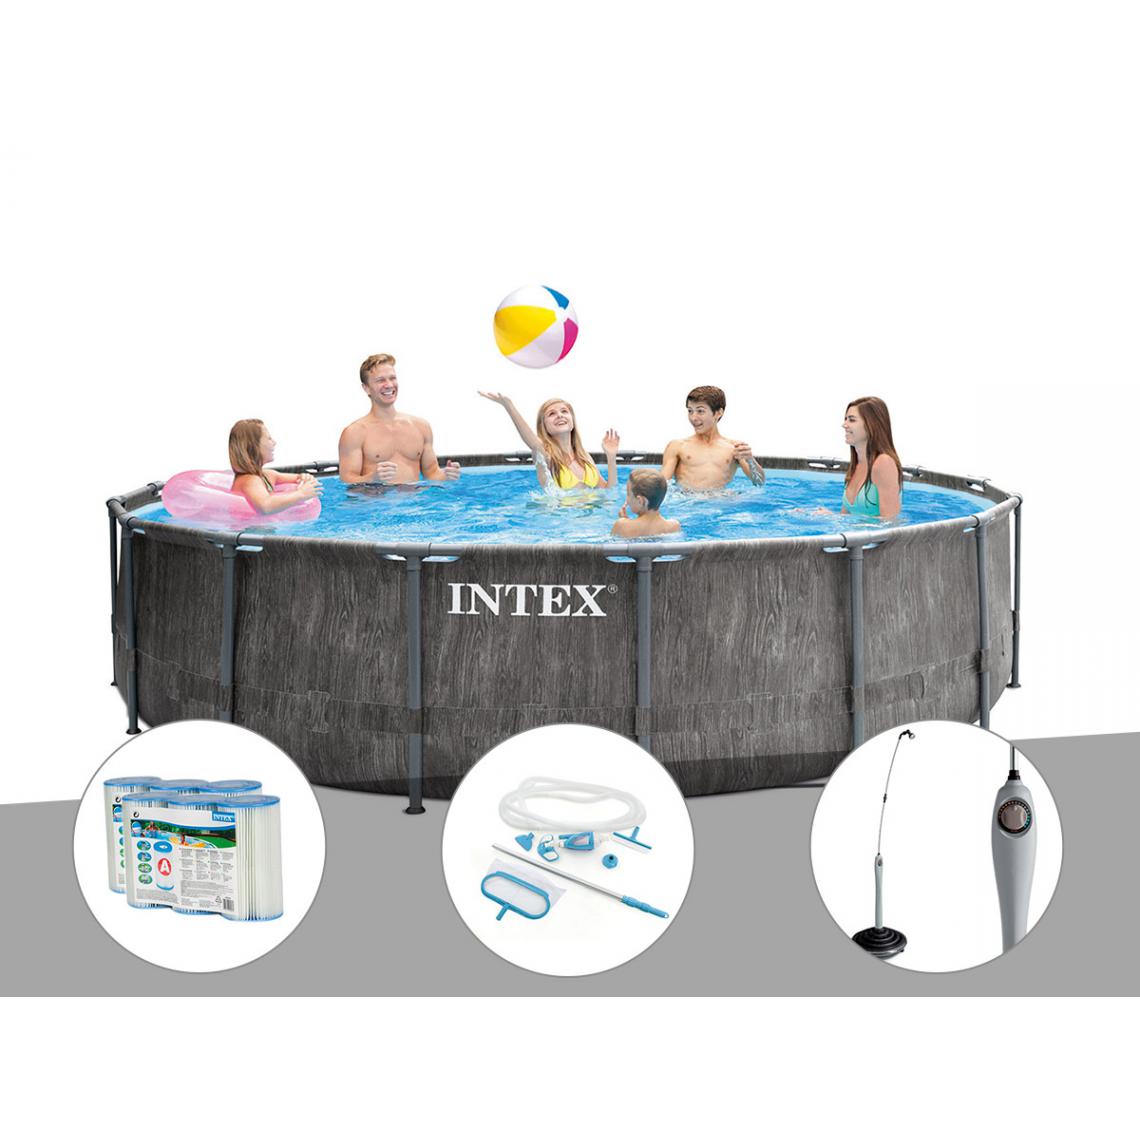 Intex - Kit piscine tubulaire Intex Baltik ronde 4,57 x 1,22 m + 6 cartouches de filtration + Kit d'entretien + Douche solaire - Piscine Tubulaire